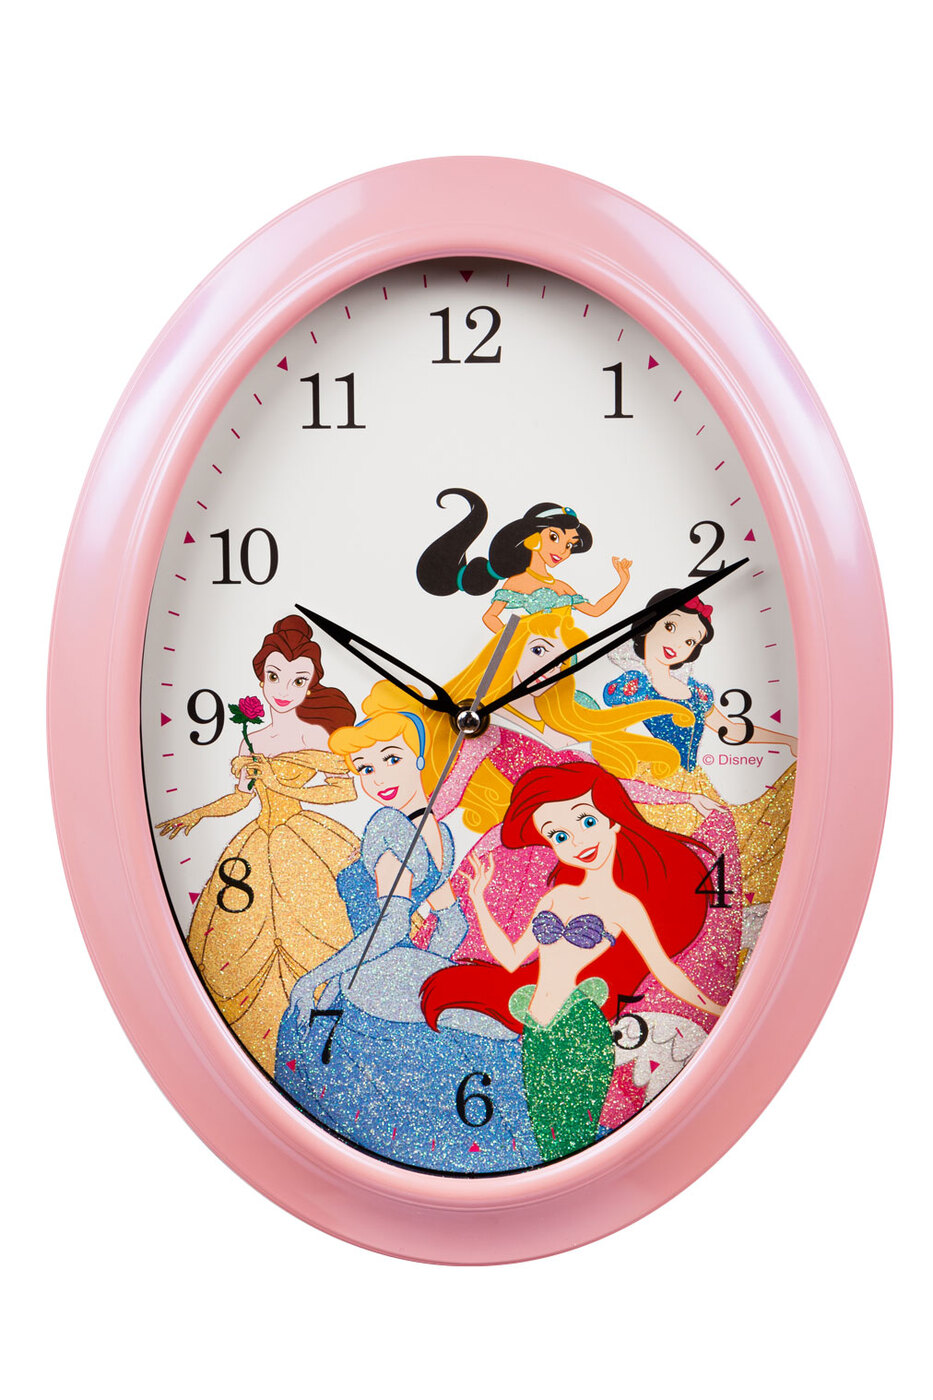 Час диснея. Часы Дисней. Часы настенные Disney. Детские часы Дисней. La mer часы настенные.